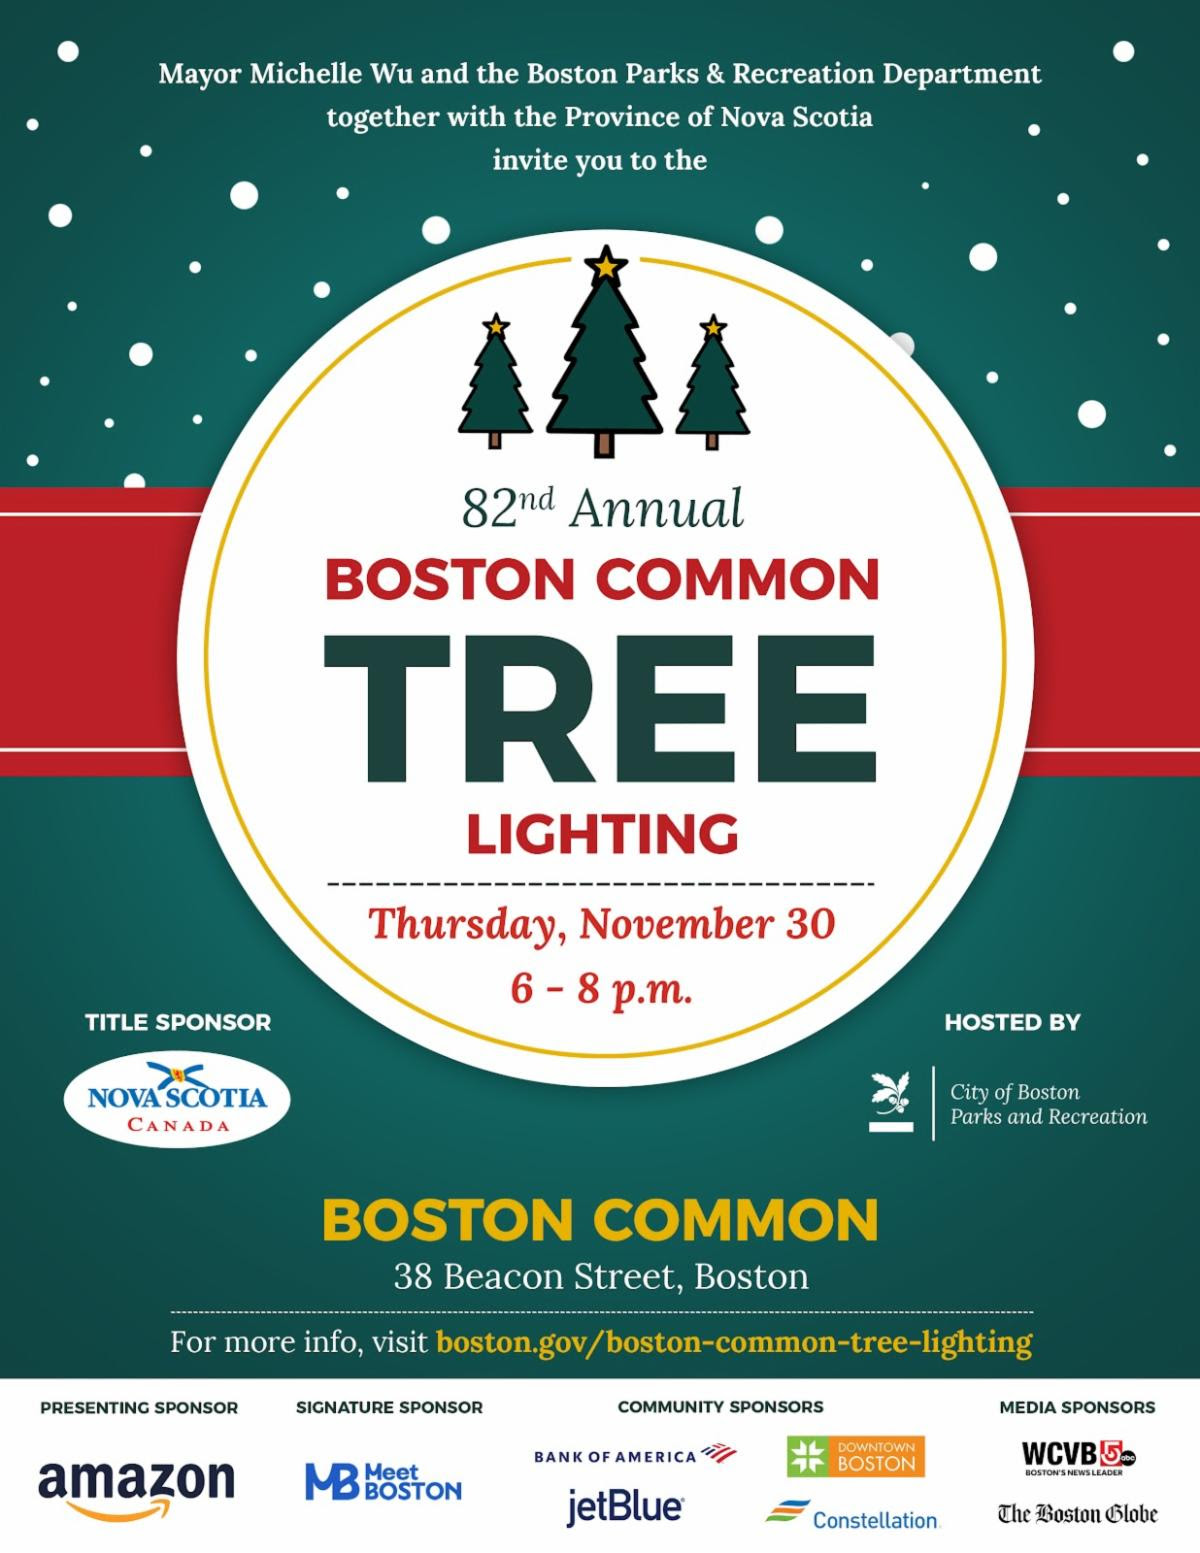 吴弭市长于 11 月 30 日主持波士顿官方圣诞树亮灯活动